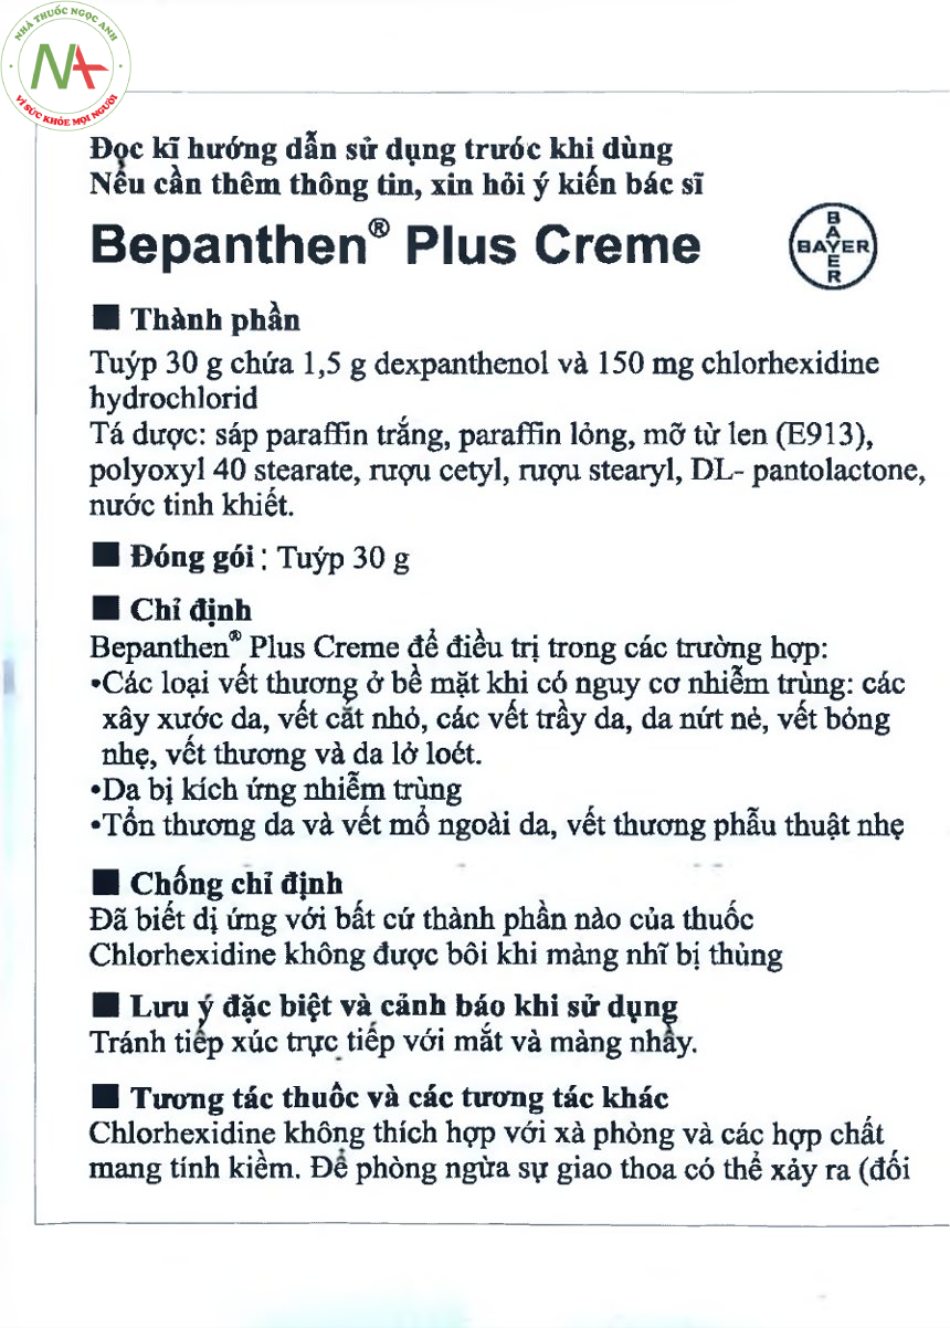 Hướng dẫn sử dụng thuốc Bepanthen Plus Creme